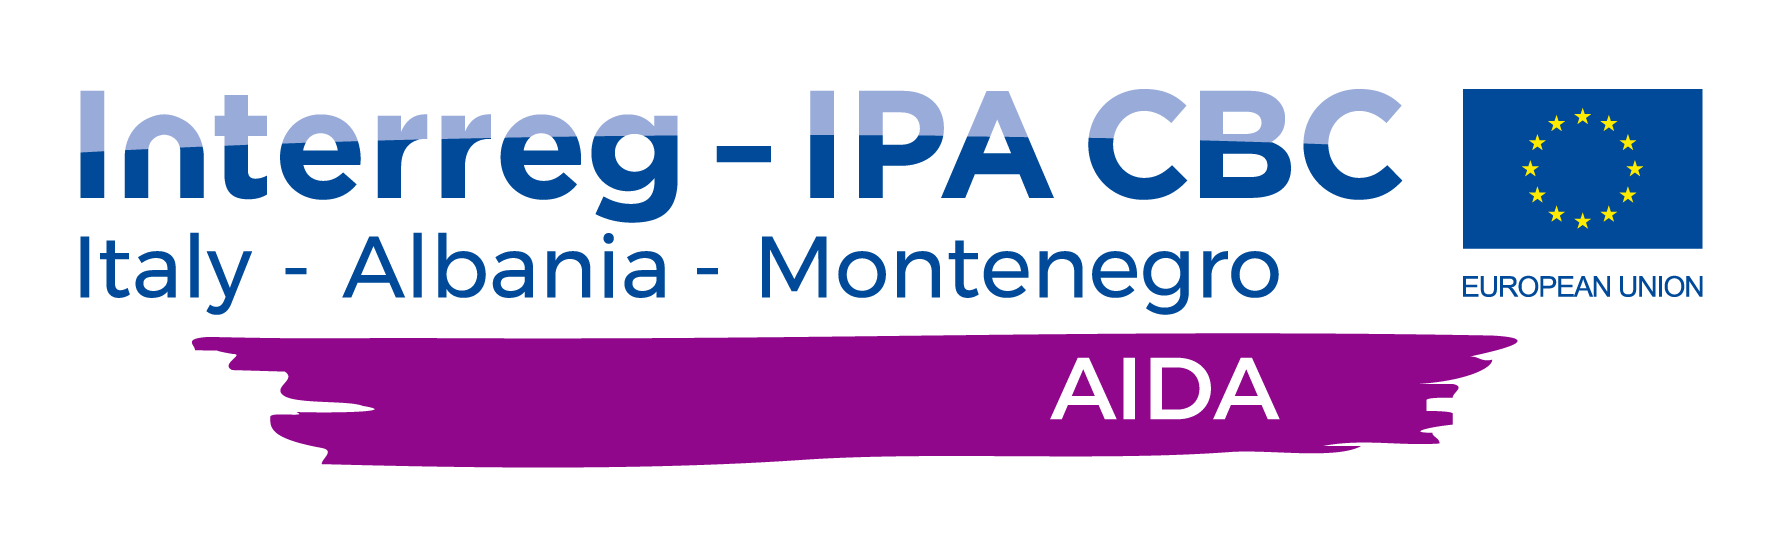 AIDA footer logo